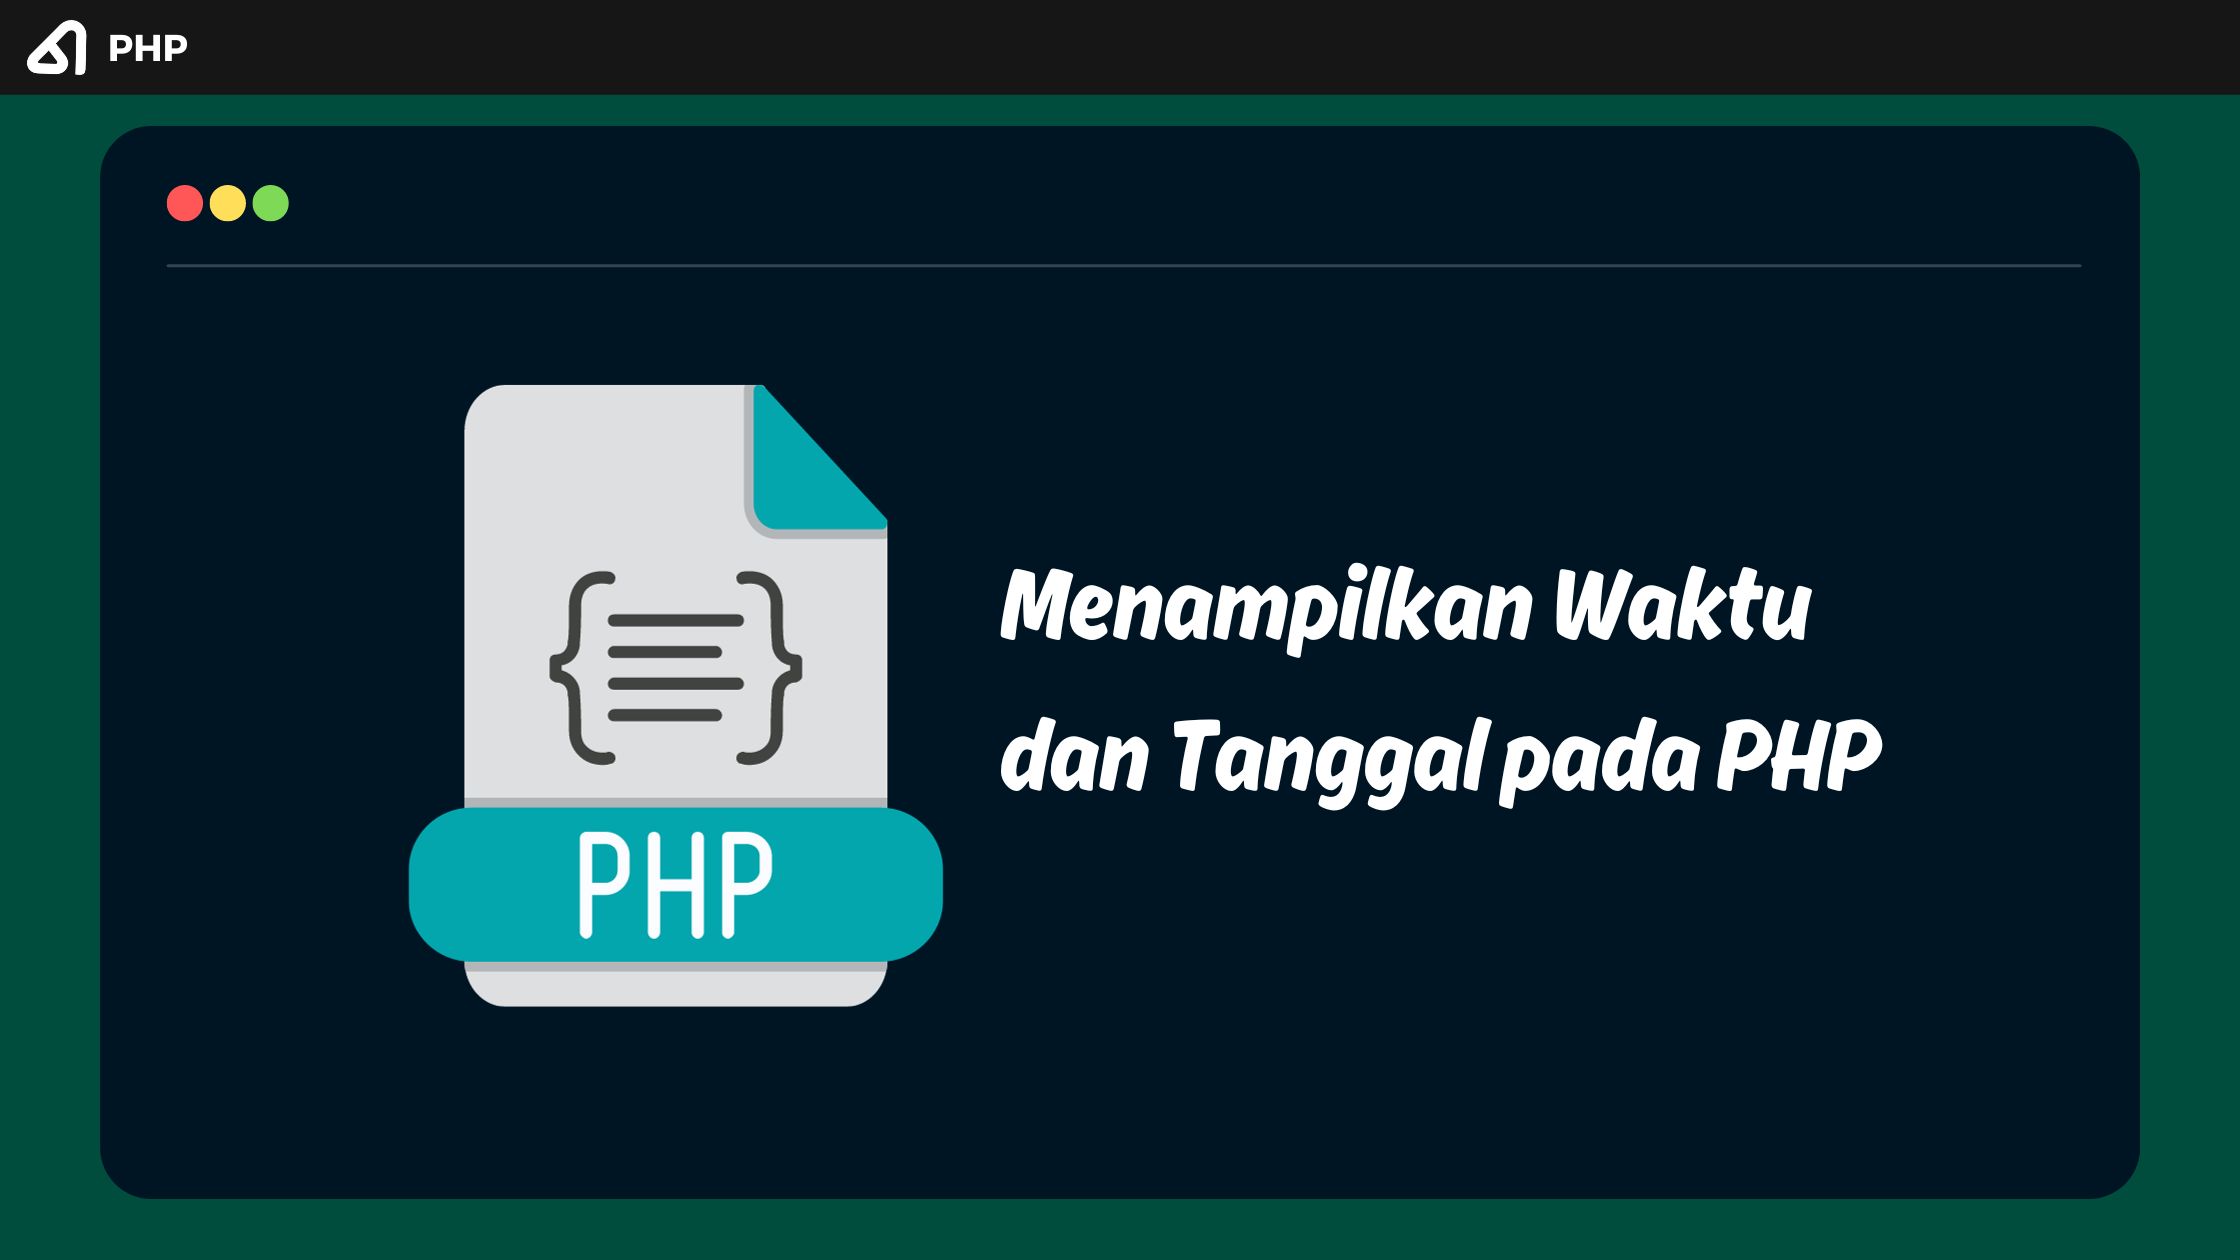 Menampilkan Waktu dan Tanggal pada PHP